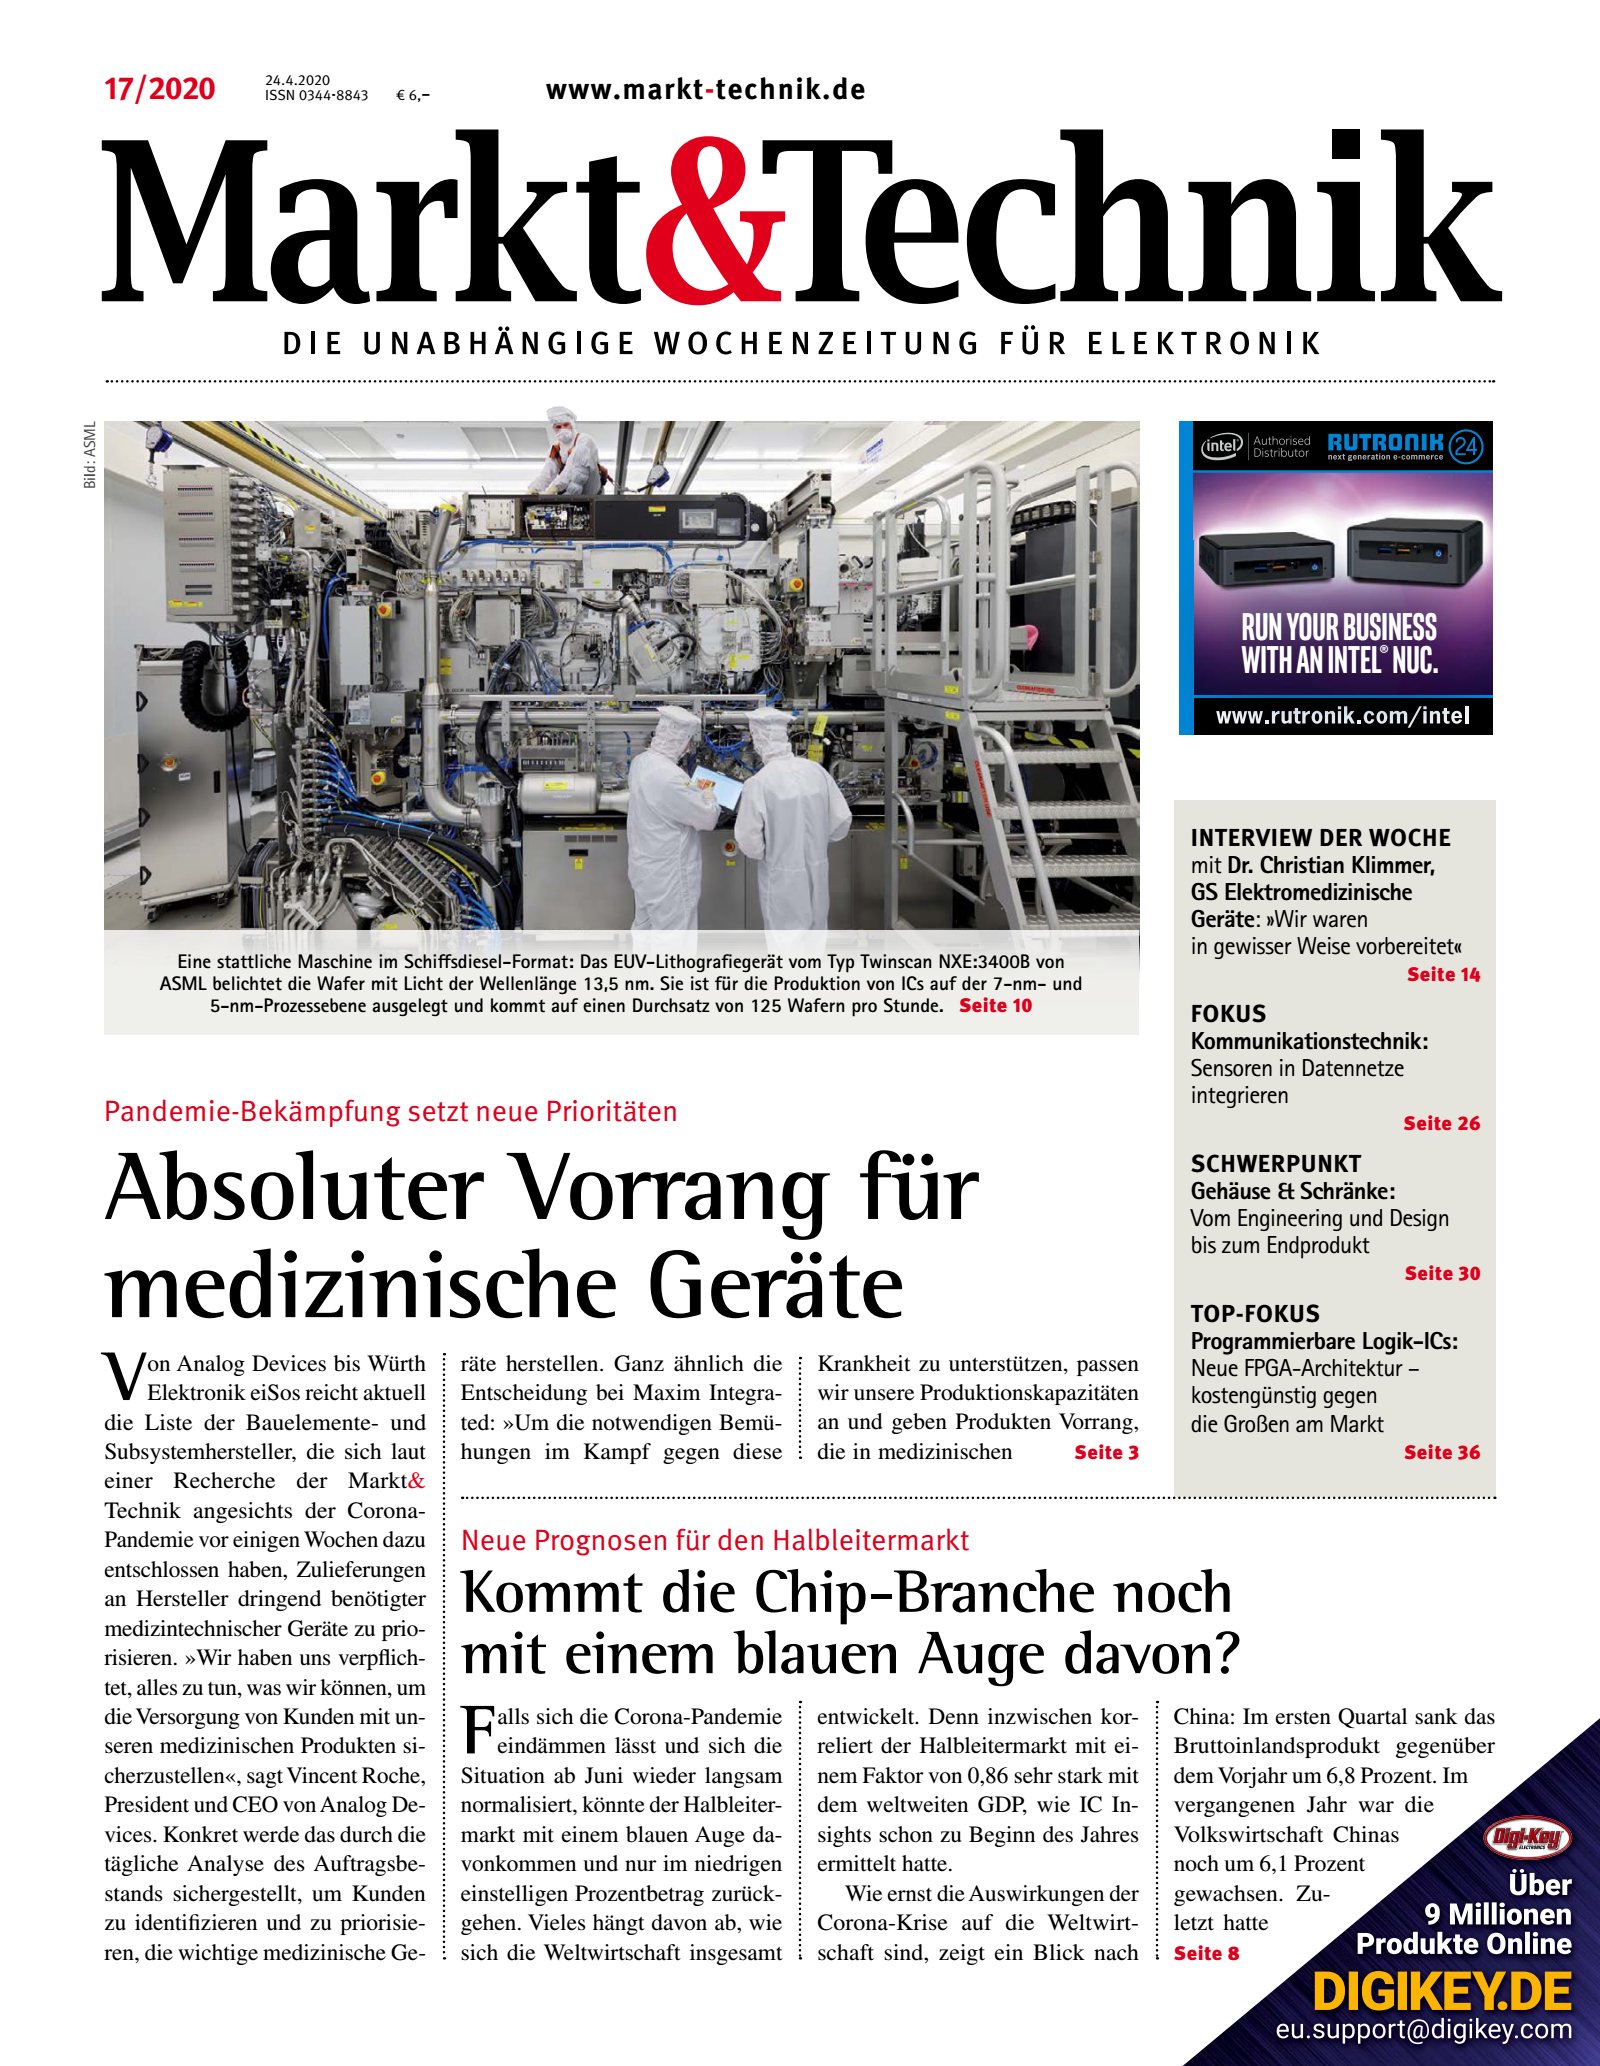 Markt&Technik 17/2020 Digital